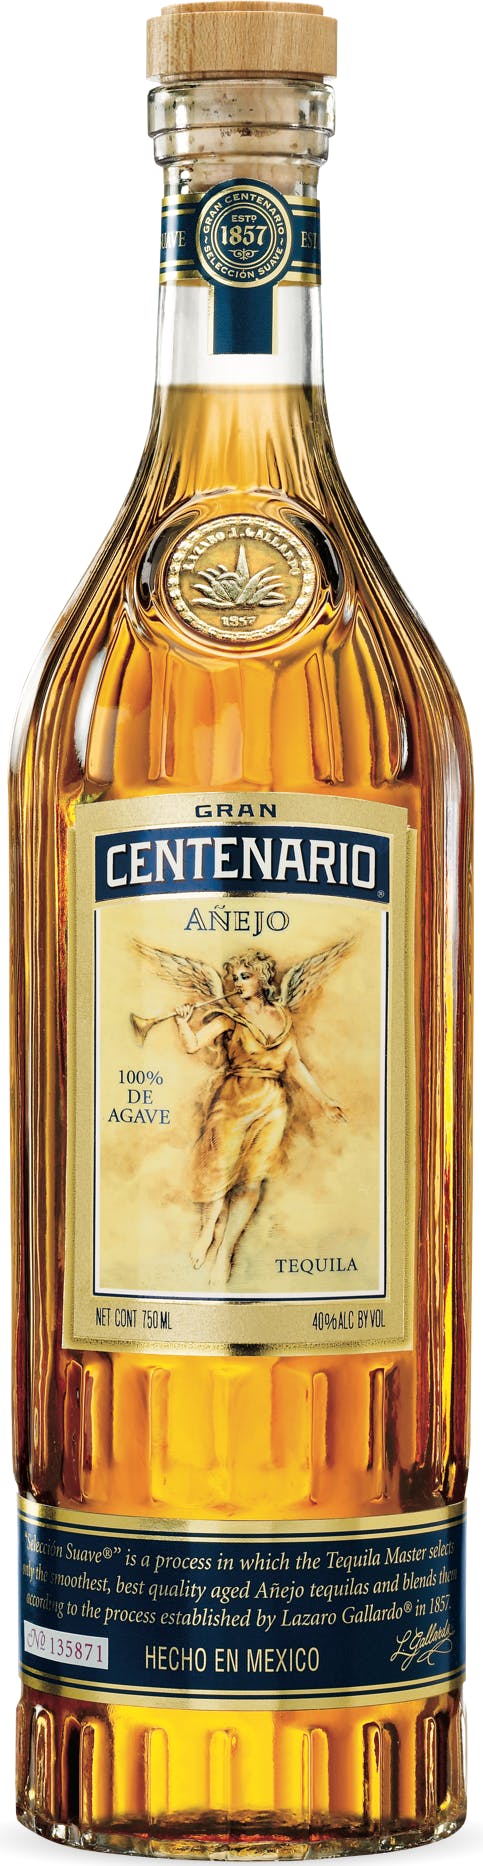 Gran Centenario Añejo 750ml Kelly's Liquor